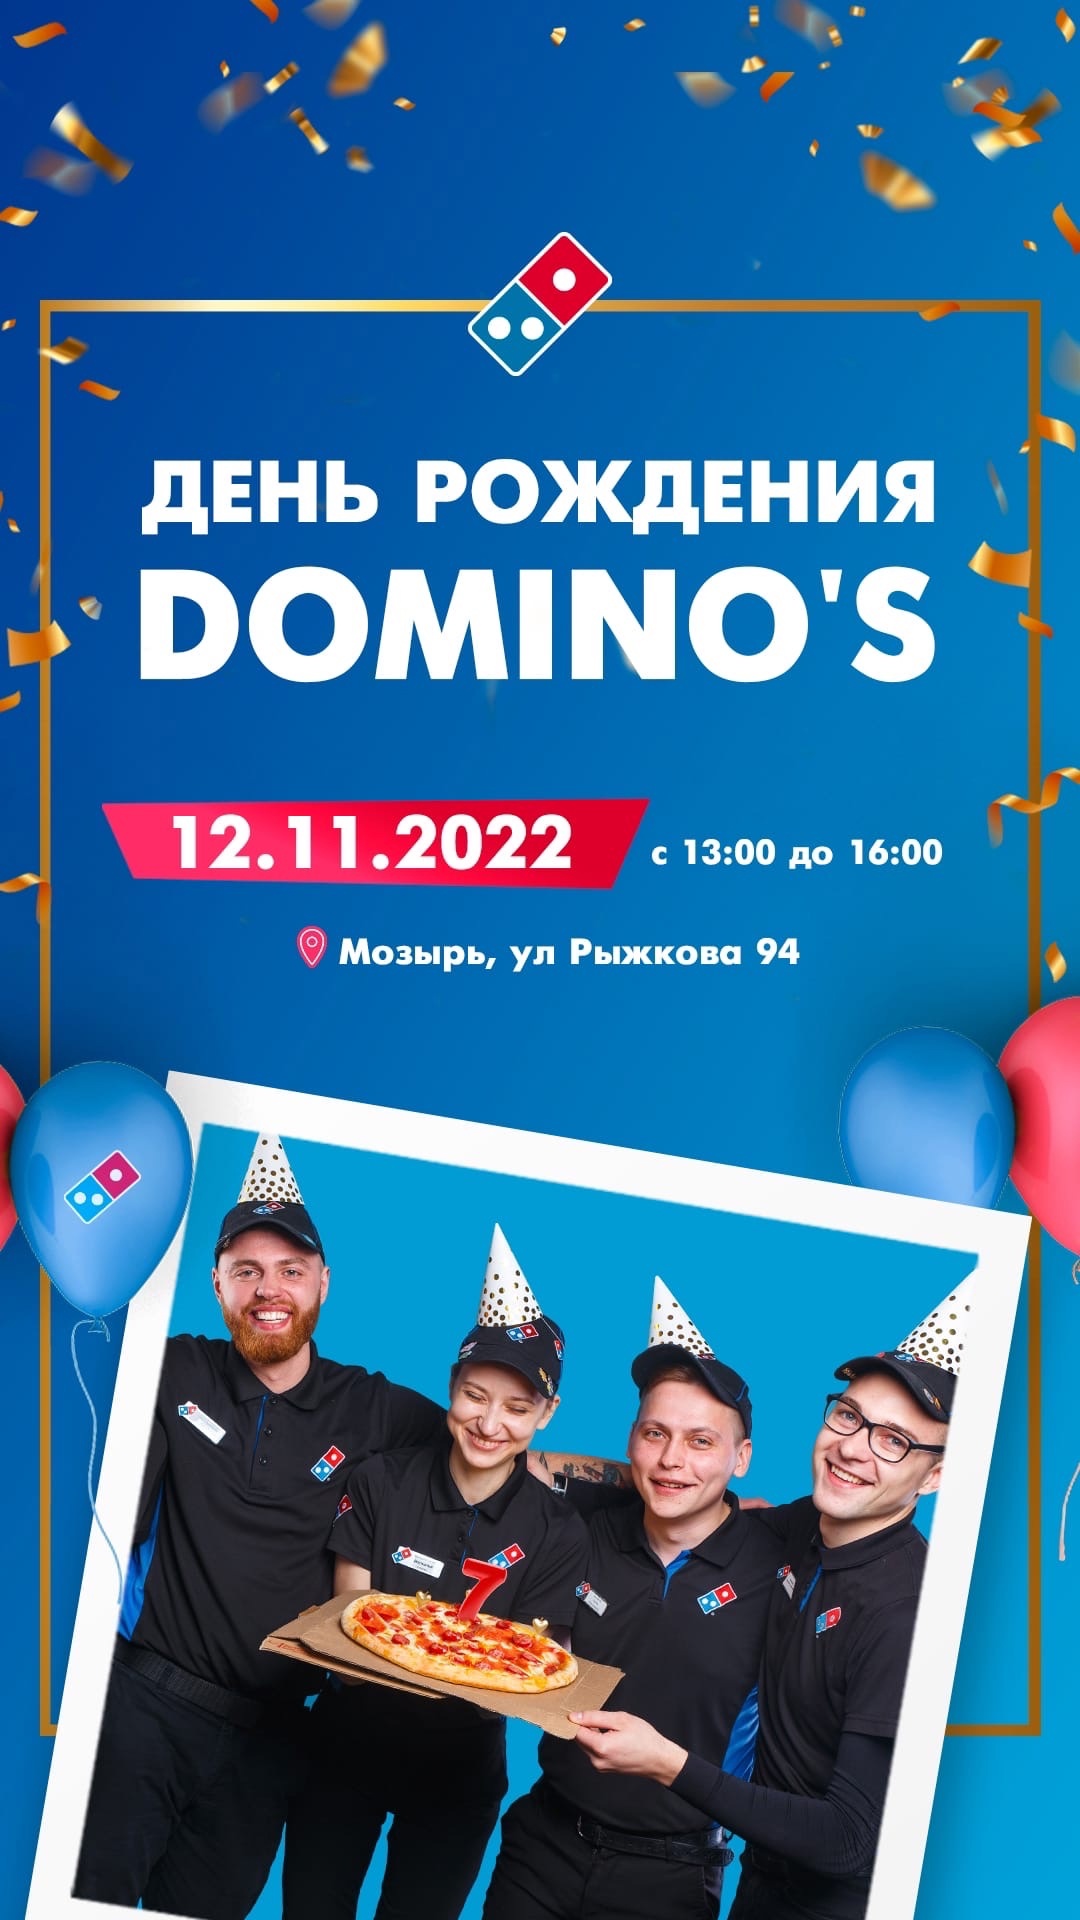 Дня рождения Domino’s